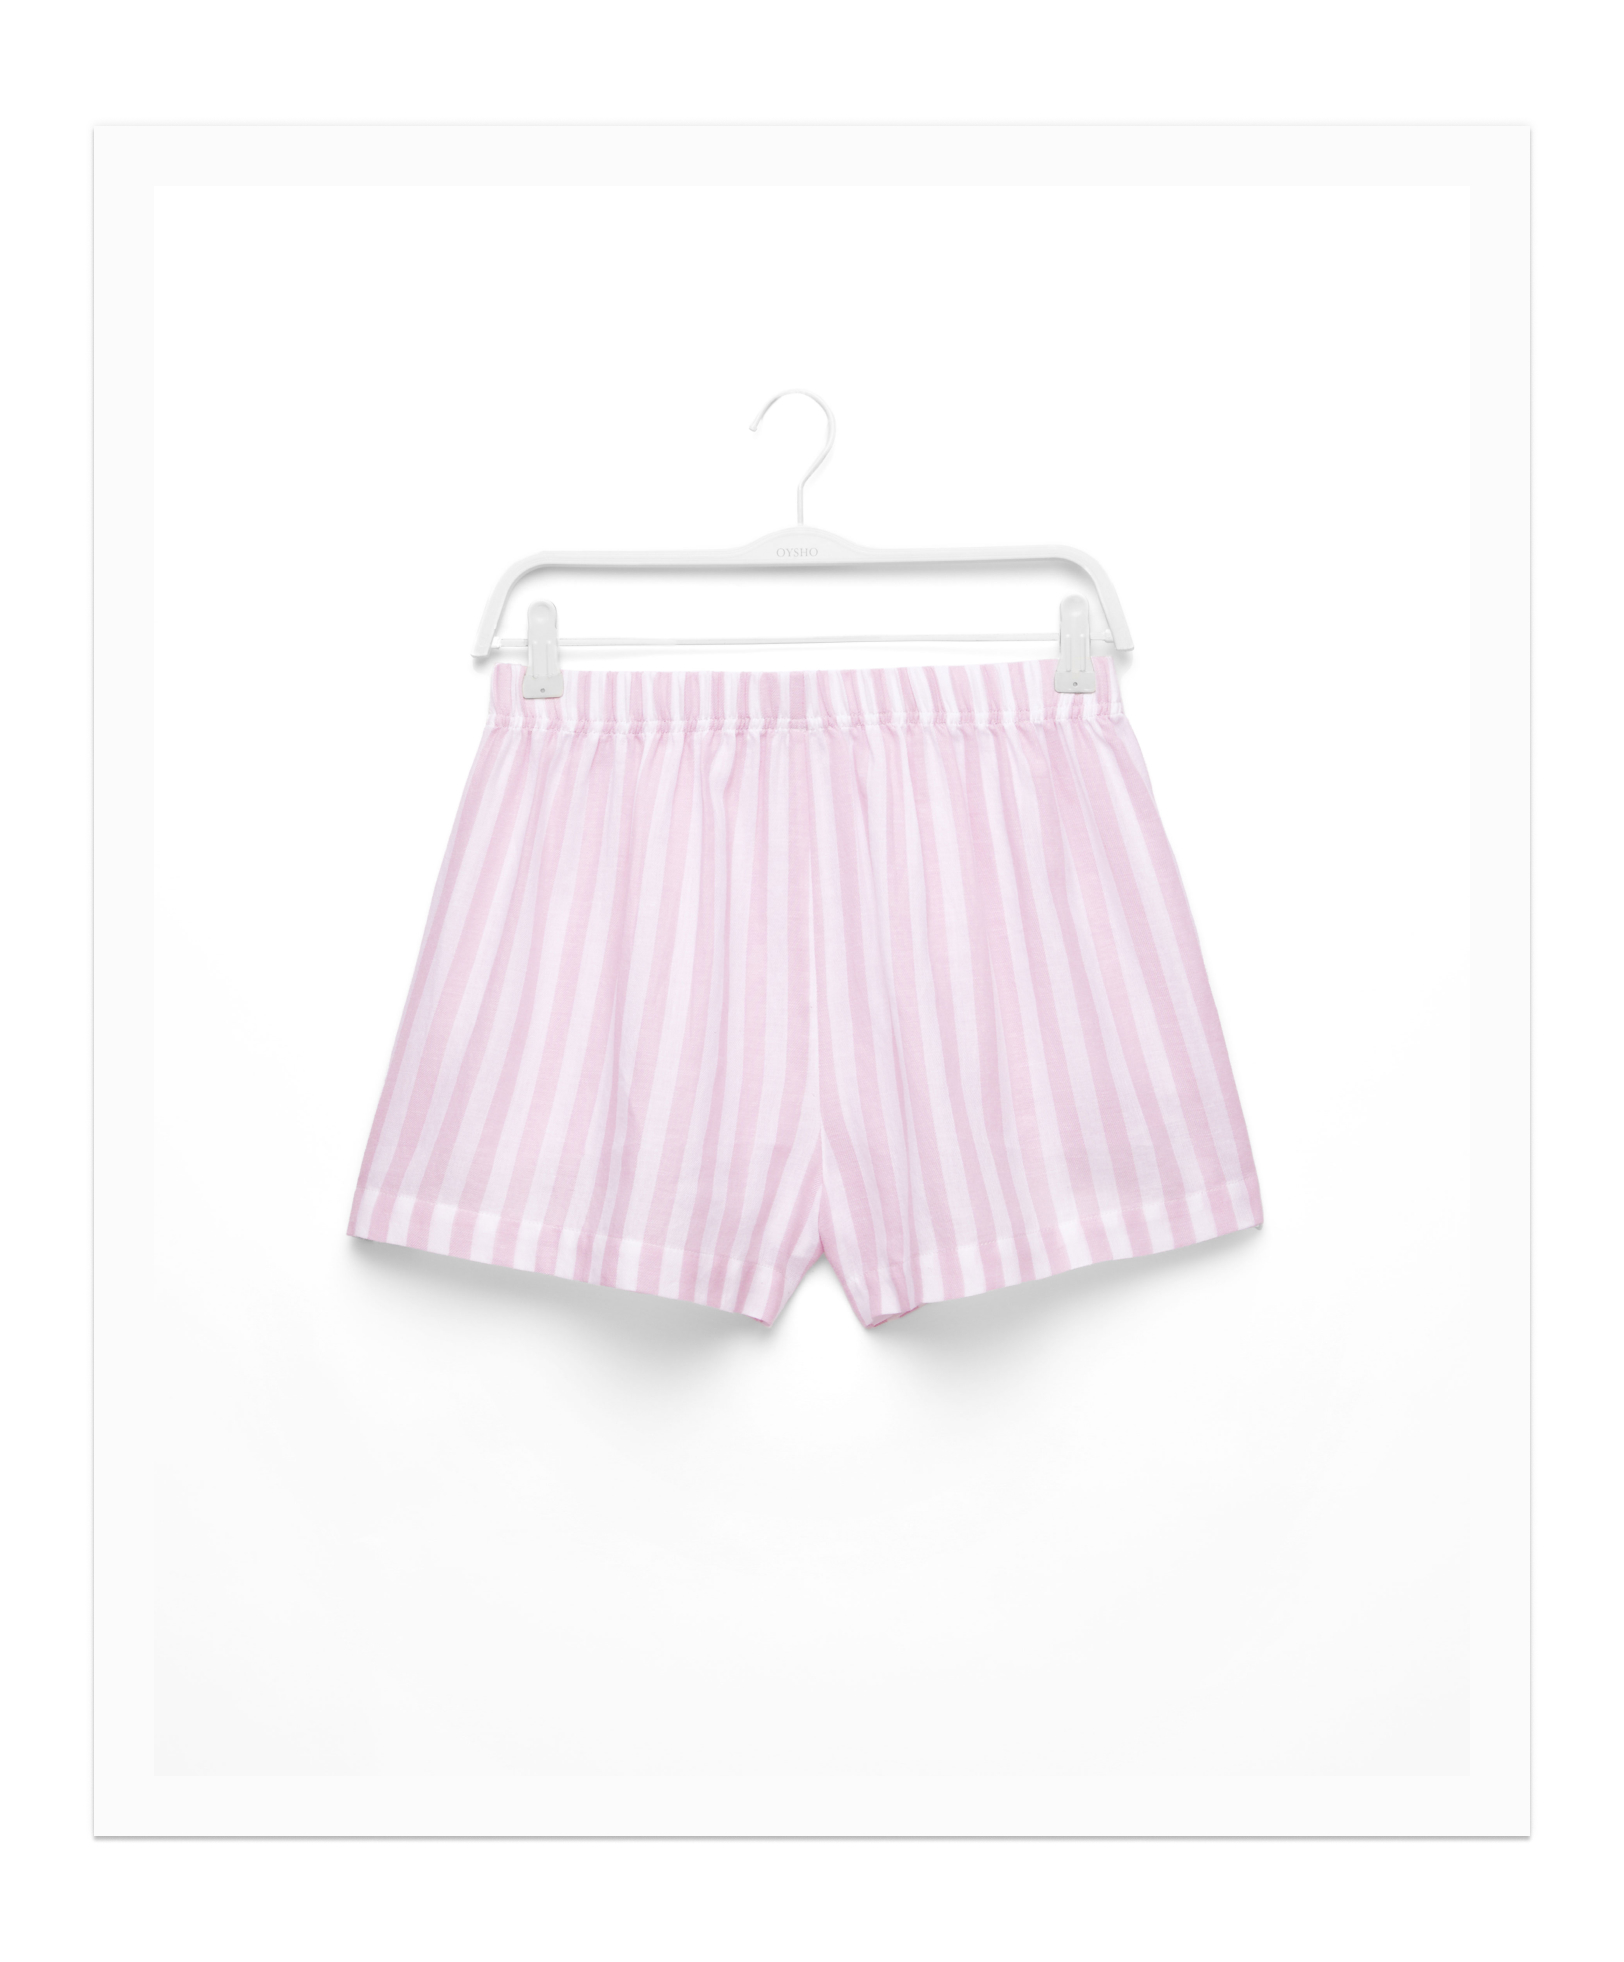 100% cotton stripe shorts